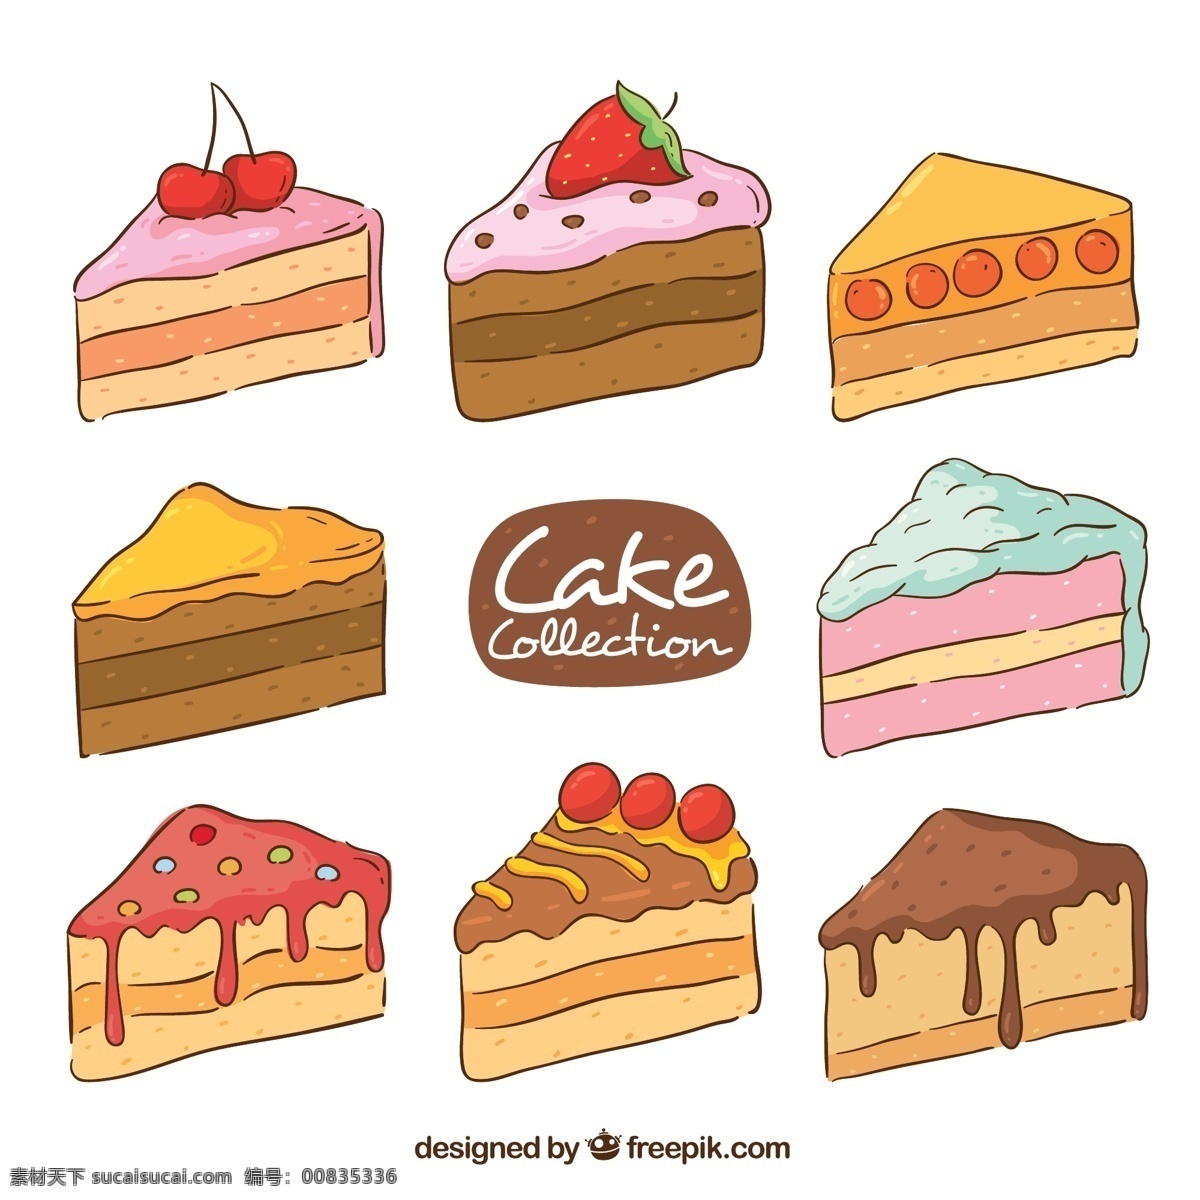 美味三角蛋糕 美味 三角 蛋糕 草莓 樱桃 三角蛋糕 生活用品 生活百科 餐饮美食